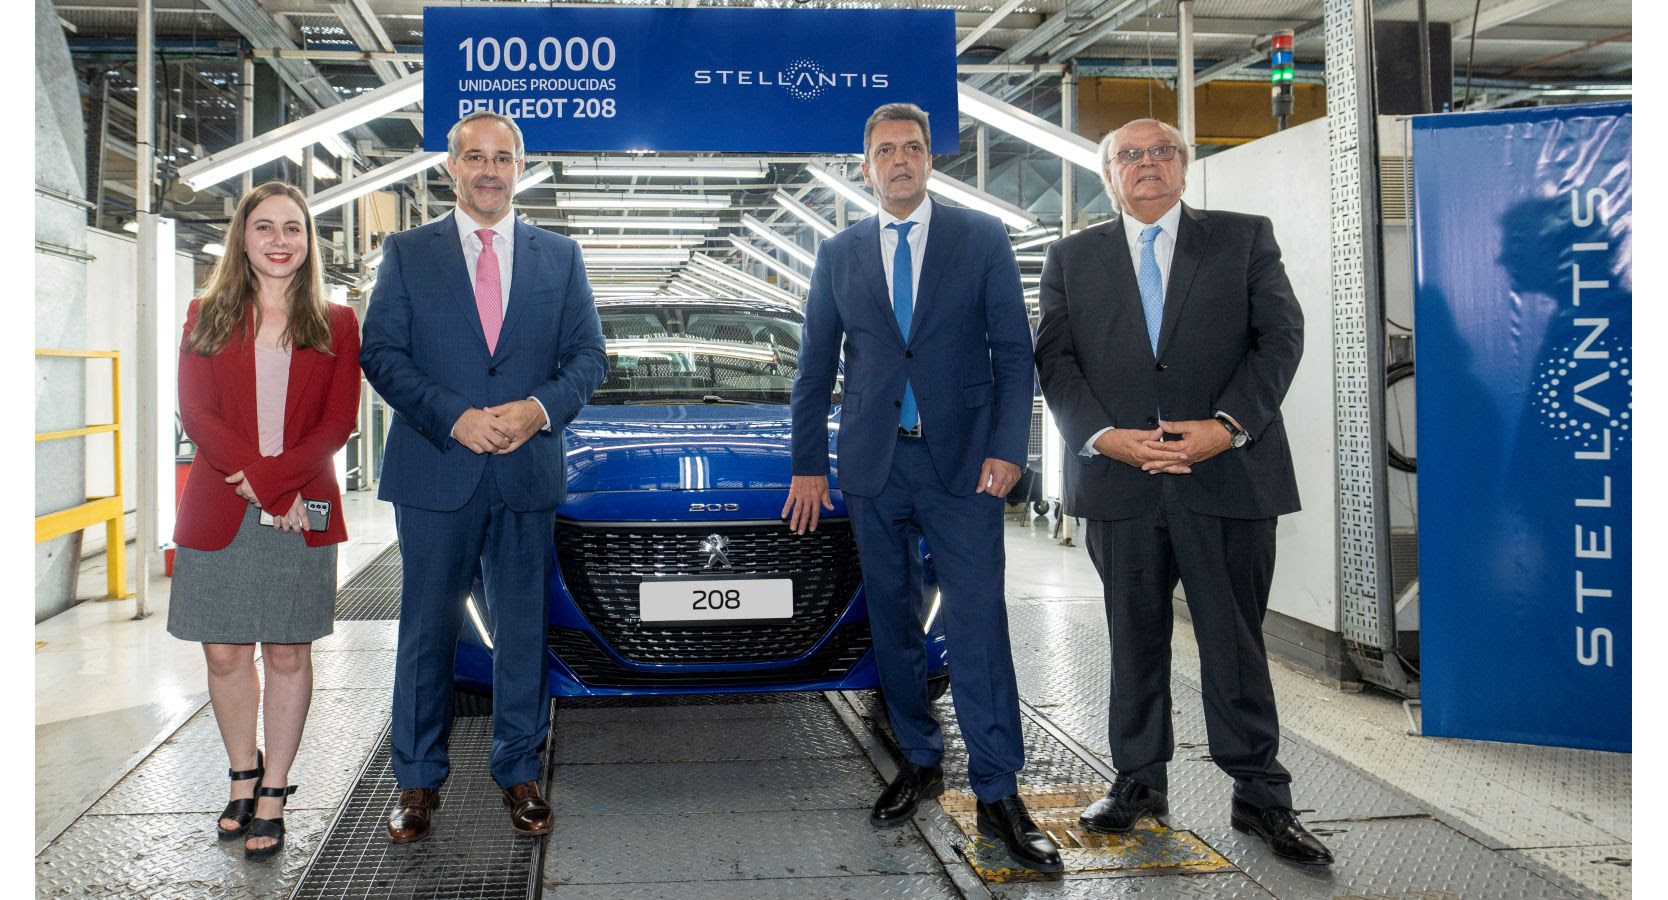 Stellantis alcanzó las 100.000 unidades producidas del Peugeot 208 en El Palomar